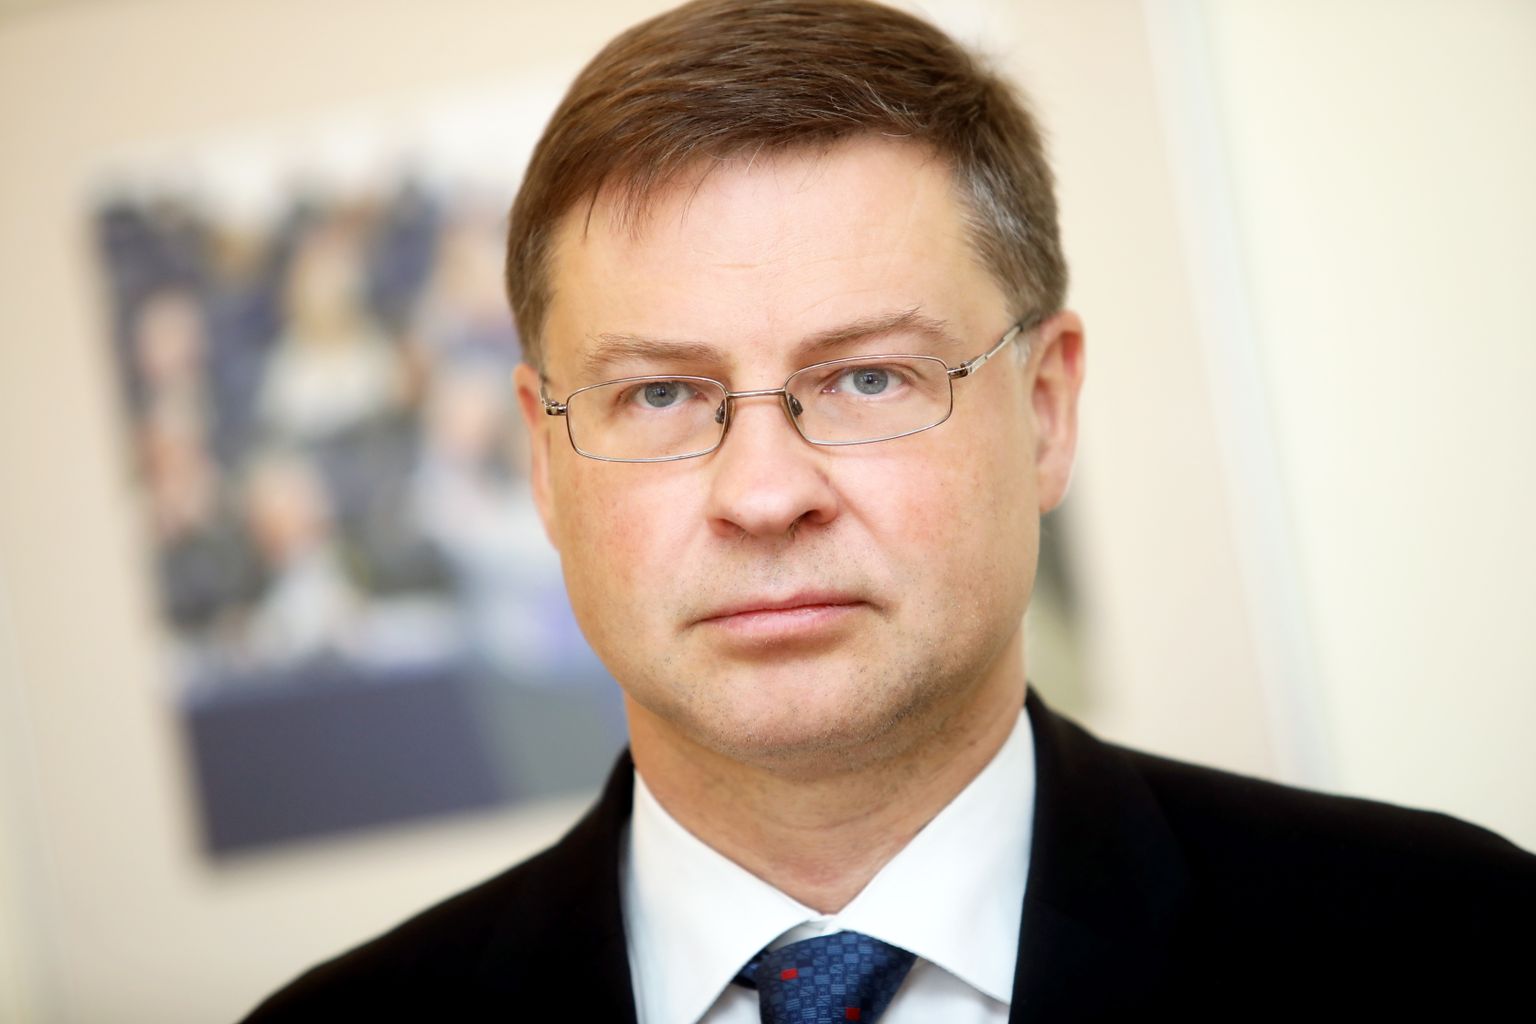 Eiropas Komisijas viceprezidents Valdis Dombrovskis atbild uz žurnālistu jautājumiem pēc tikšanās Ministru prezidentu.